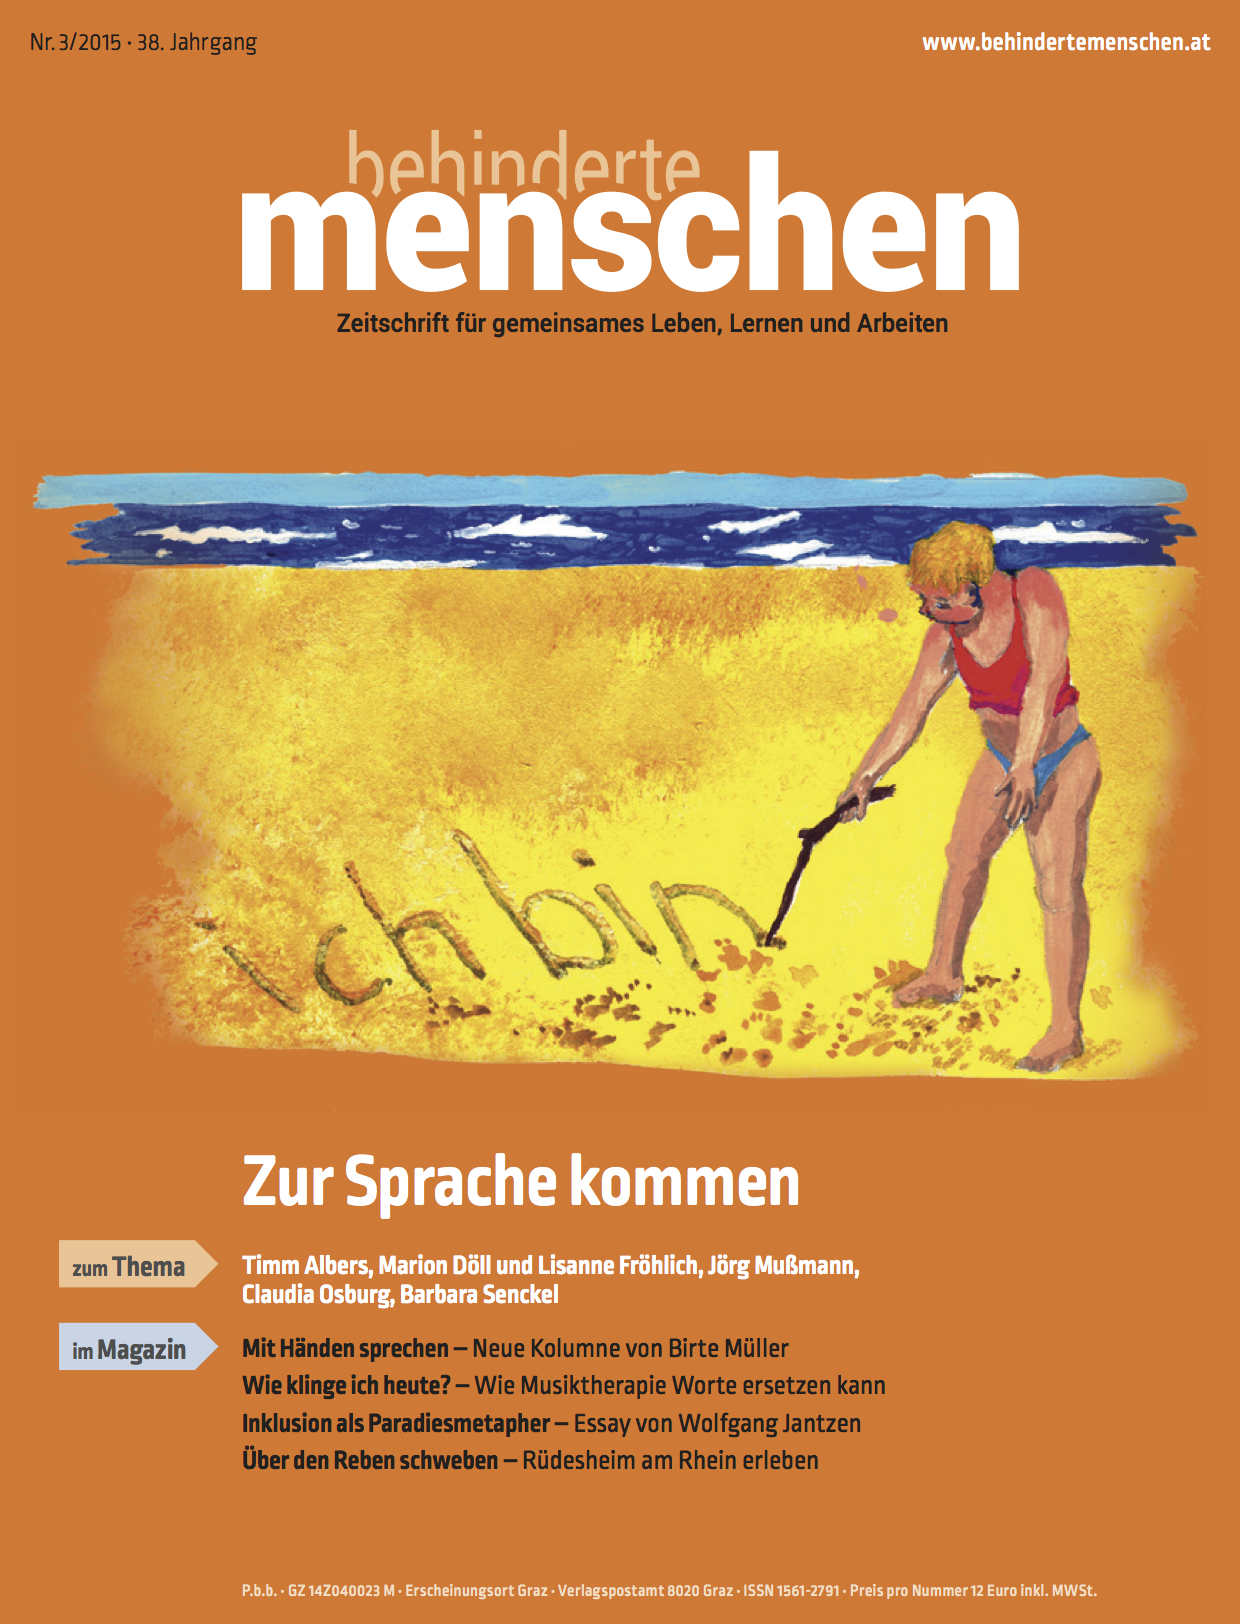 Titelbild der Zeitschrift BEHINDERTE MENSCHEN, Ausgabe 3/2015 "Zur Sprache kommen"